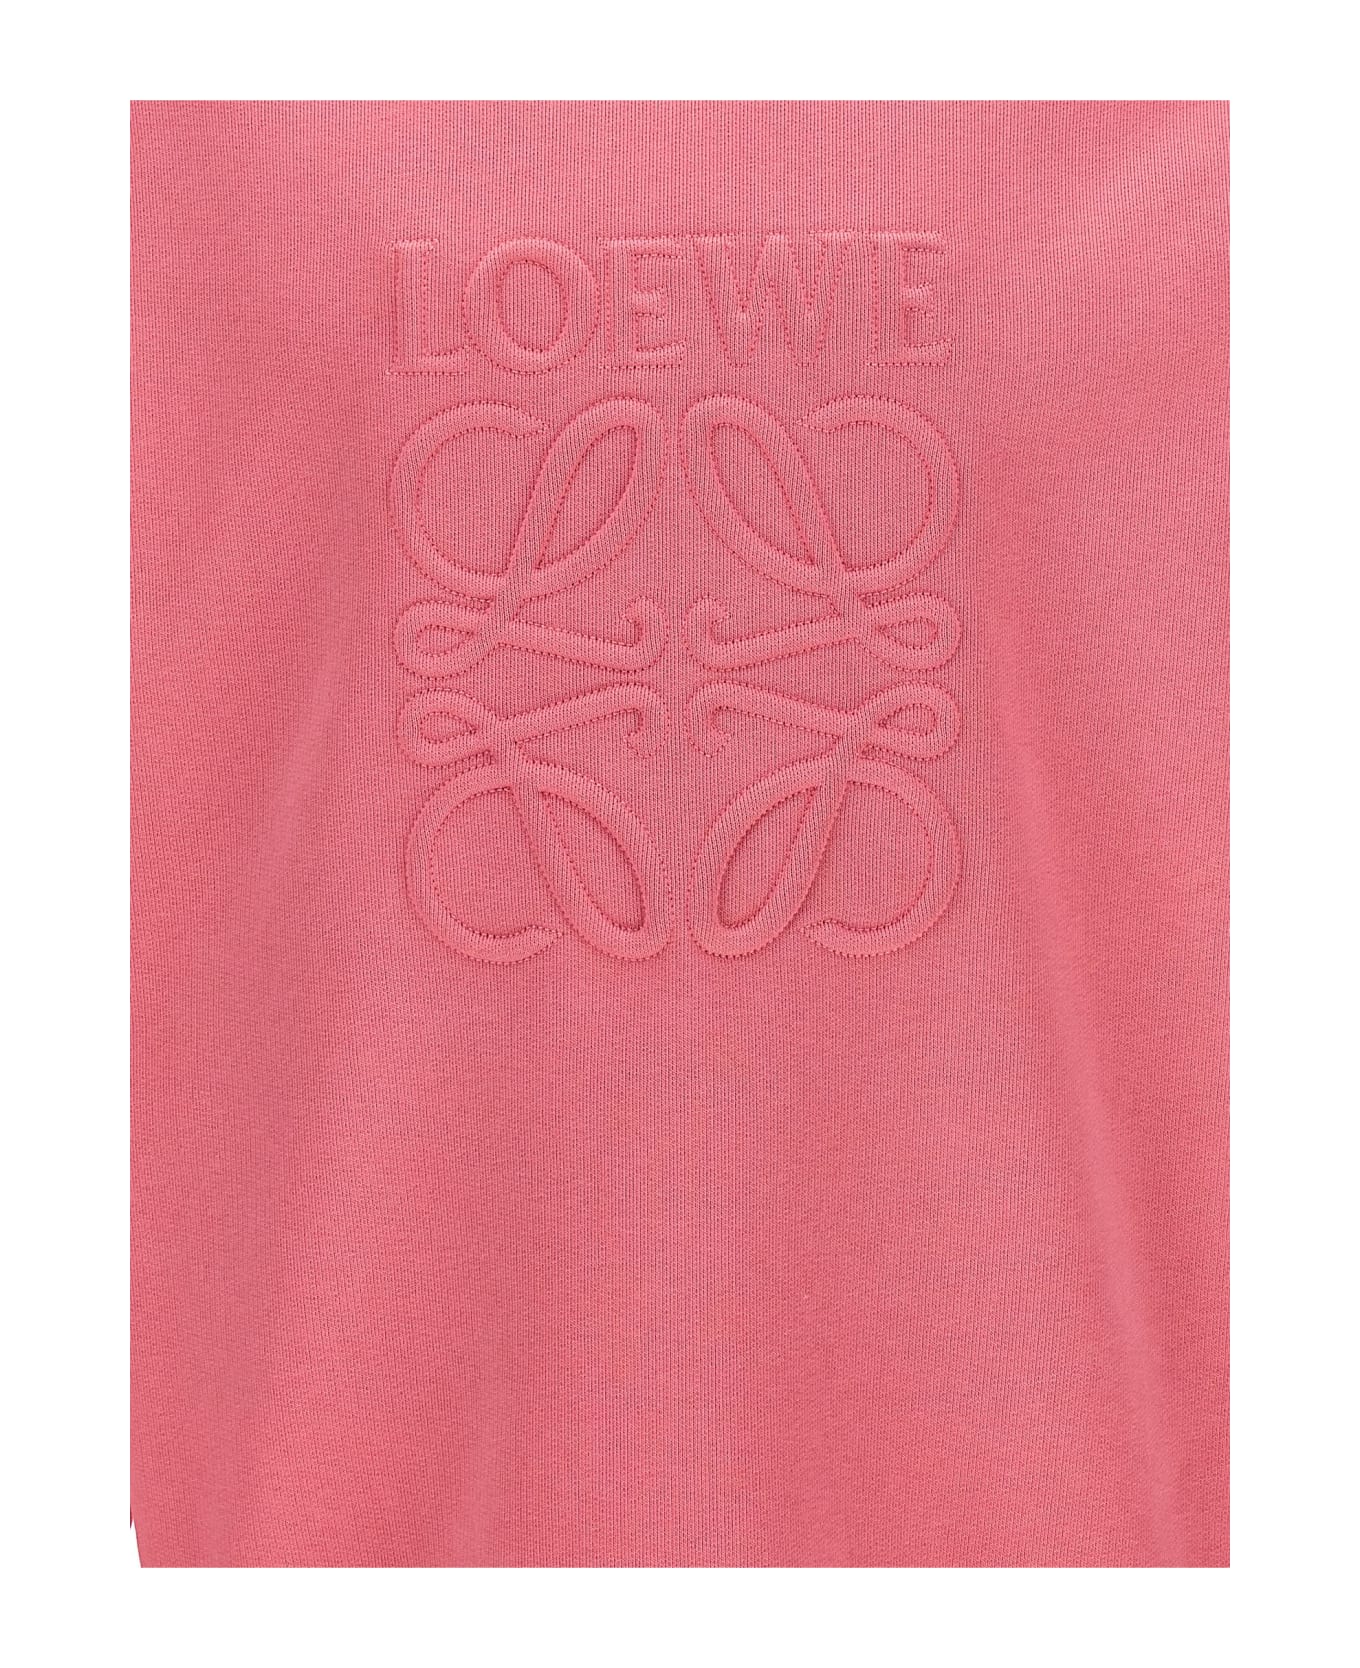 Loewe 'anagram' Sweatshirt - Pink